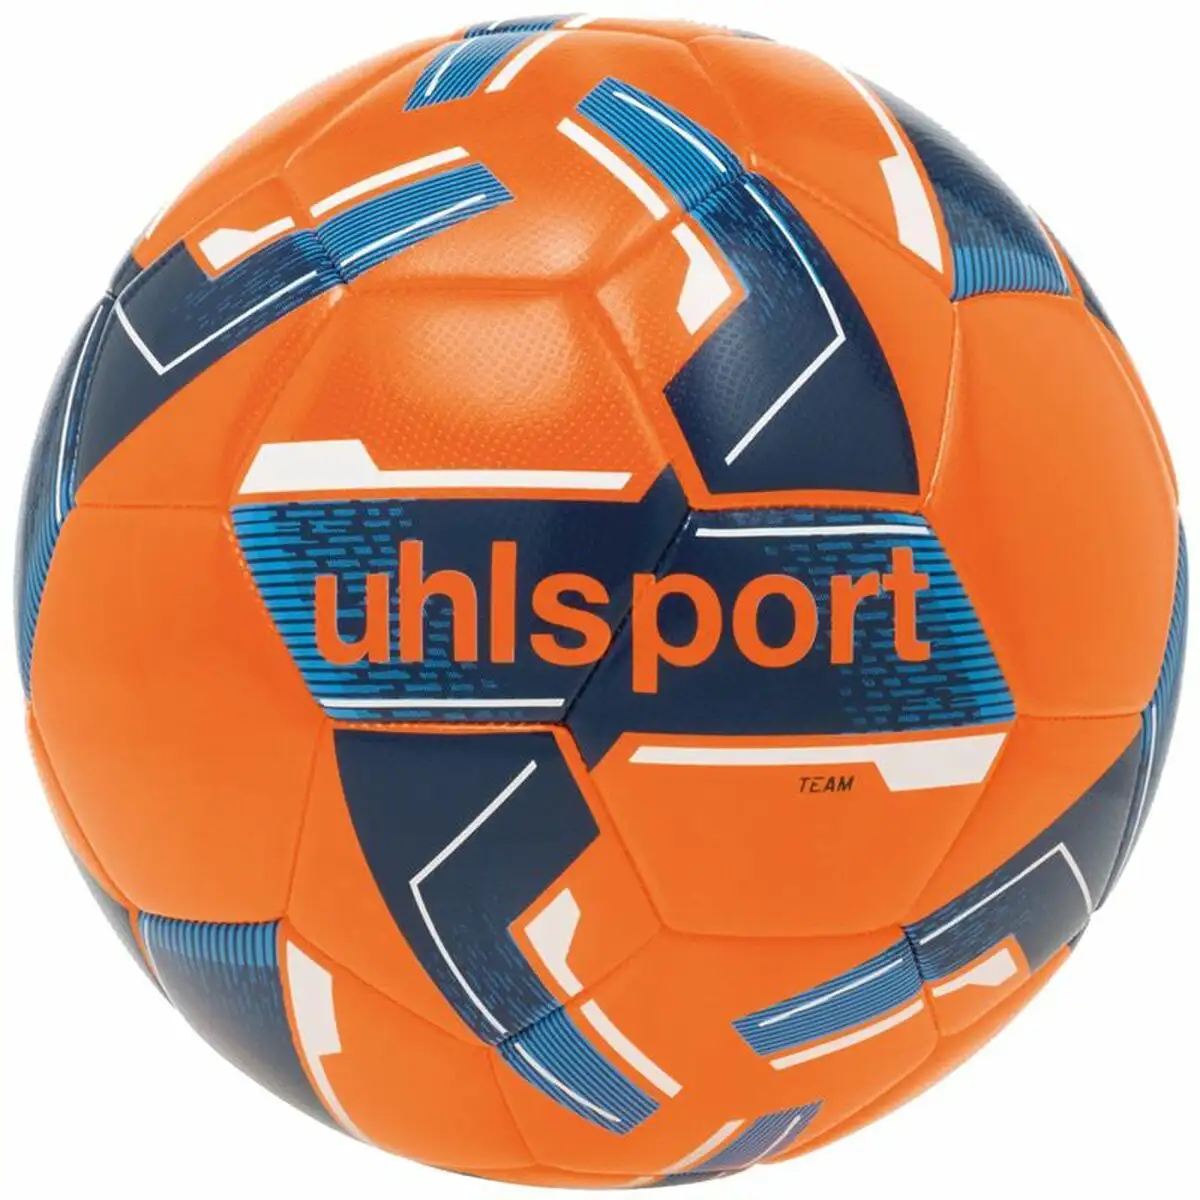 Ballon de football uhlsport team orange 5_4435. Bienvenue chez DIAYTAR SENEGAL - Où Chaque Objet a son Histoire. Découvrez notre sélection méticuleuse et choisissez des articles qui racontent l'âme du Sénégal.